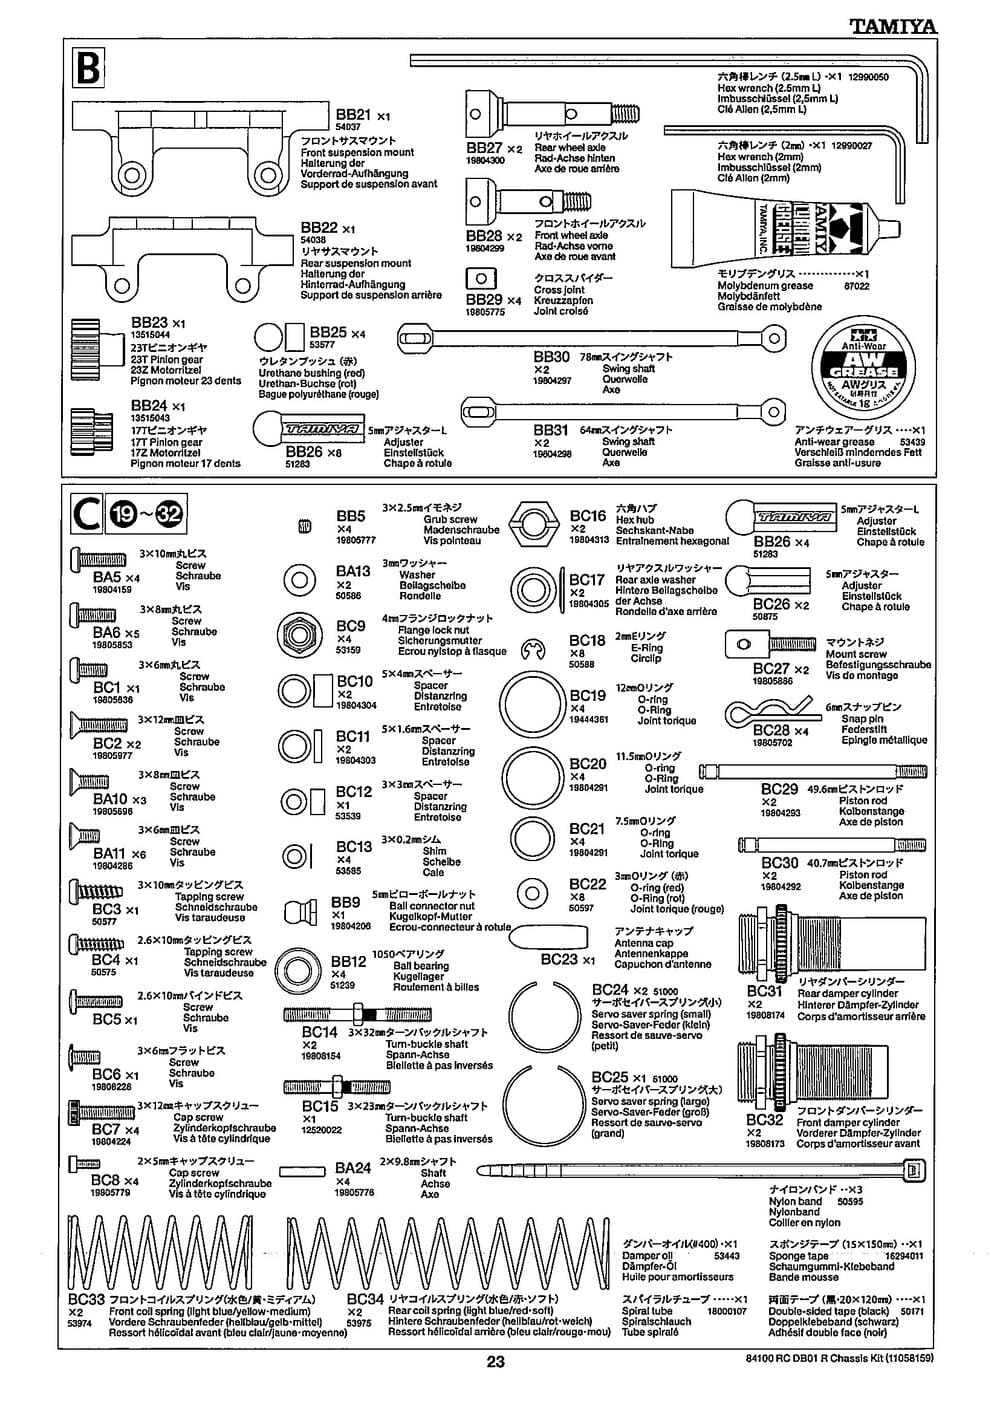 Tamiya - DB-01R Chassis - Manual - Page 23